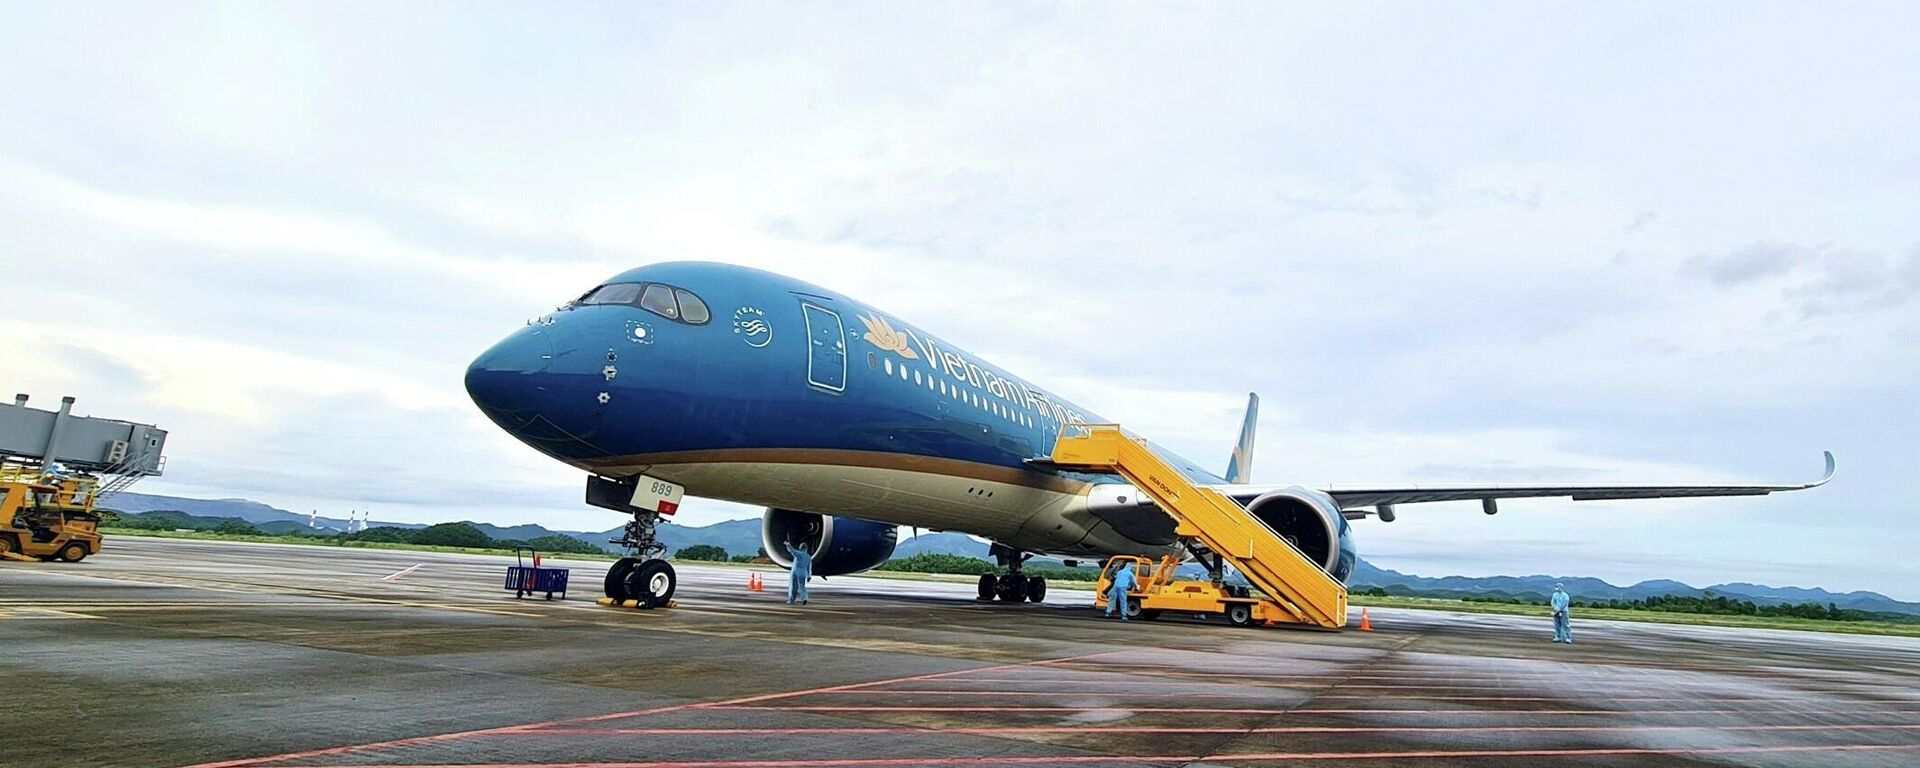 Chuyến bay mang số hiệu VN18 chở 301 hành khách từ Pháp hạ cánh an toàn ngày 23/9 tại sân bay quốc tế Vân Đồn. - Sputnik Việt Nam, 1920, 04.11.2021